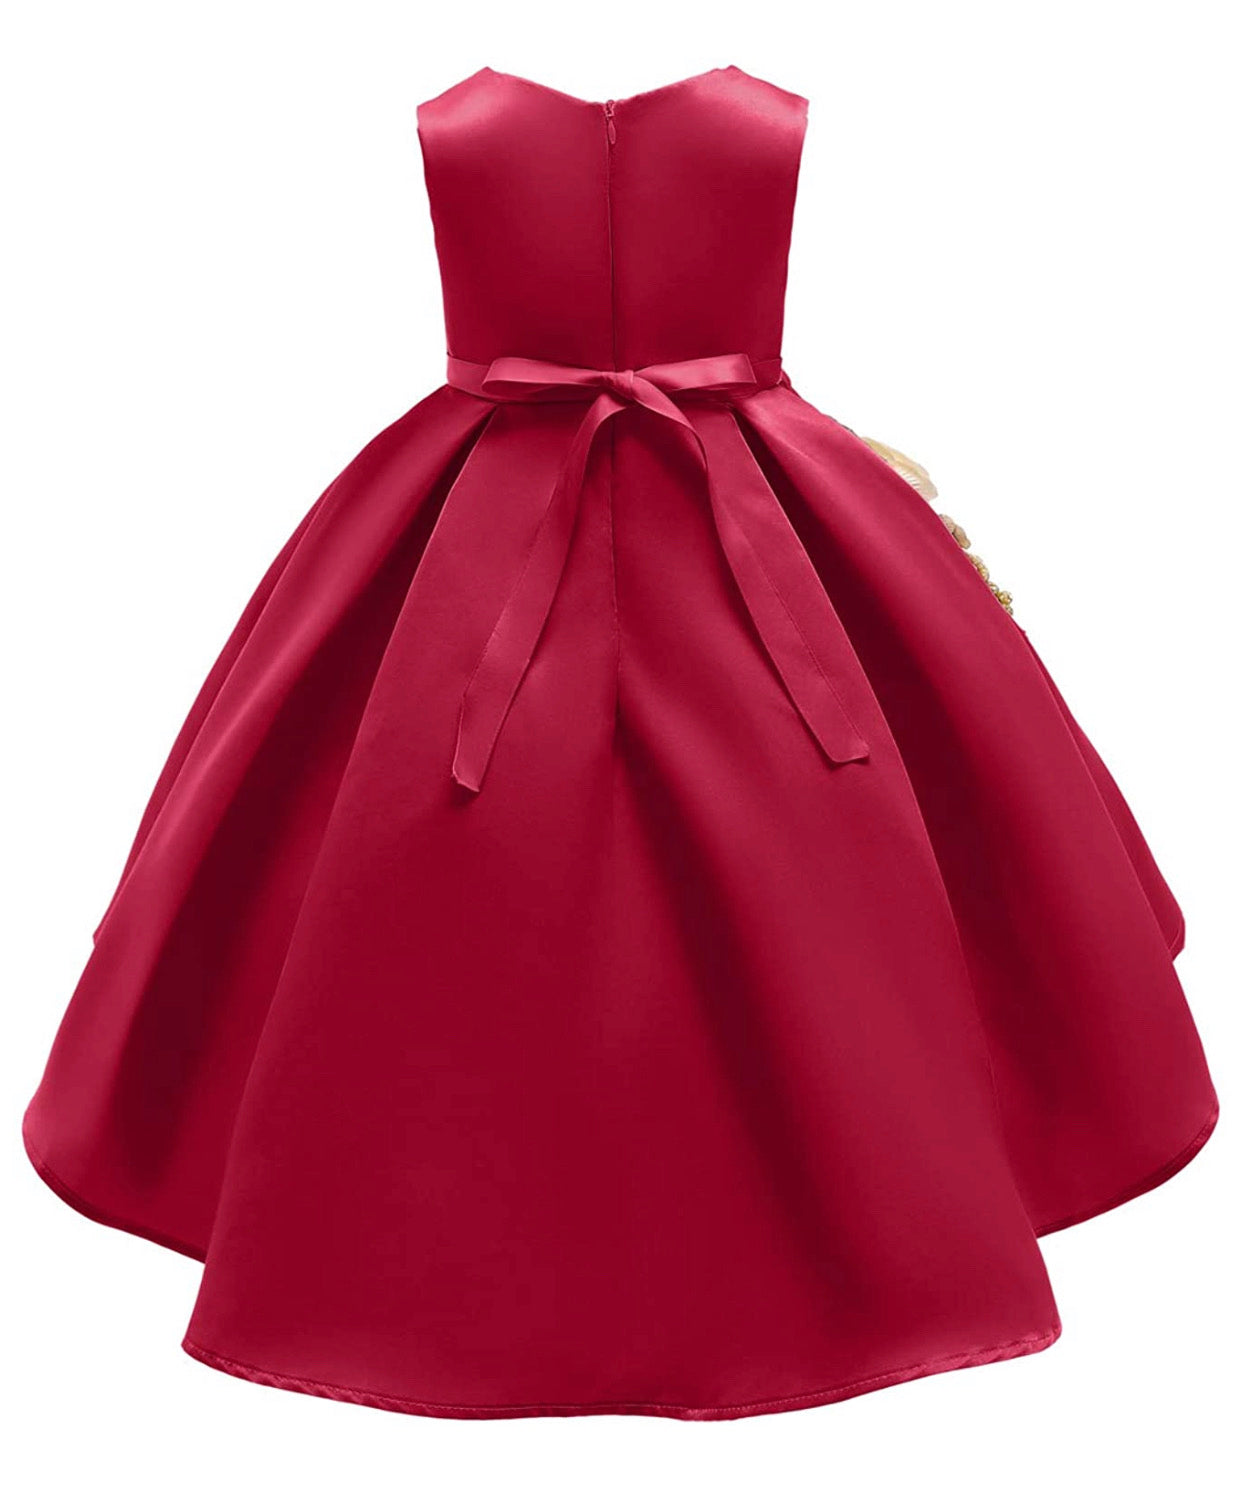 Lovely Full Flower Girl’s Dress, Sizes 2T - 9T (Red)